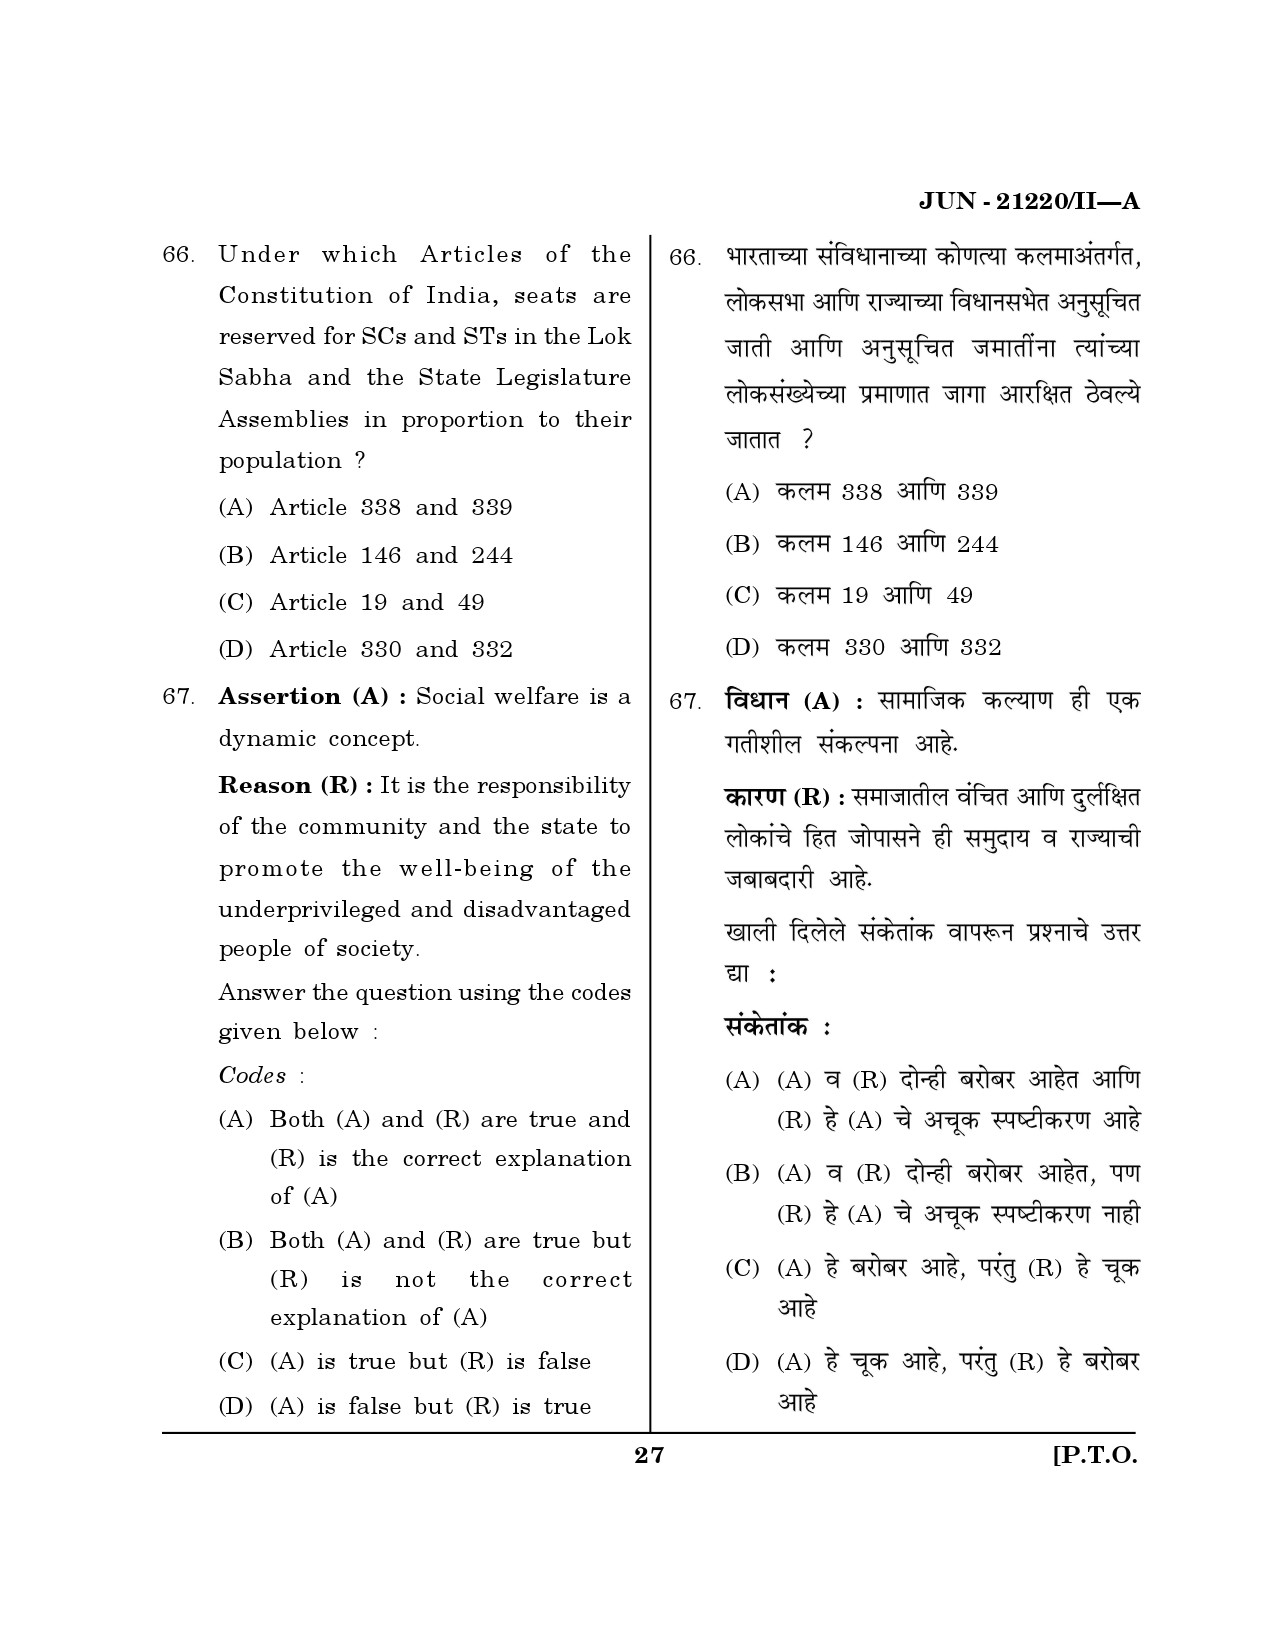 Maharashtra SET Public Administration Question Paper II June 2020 26